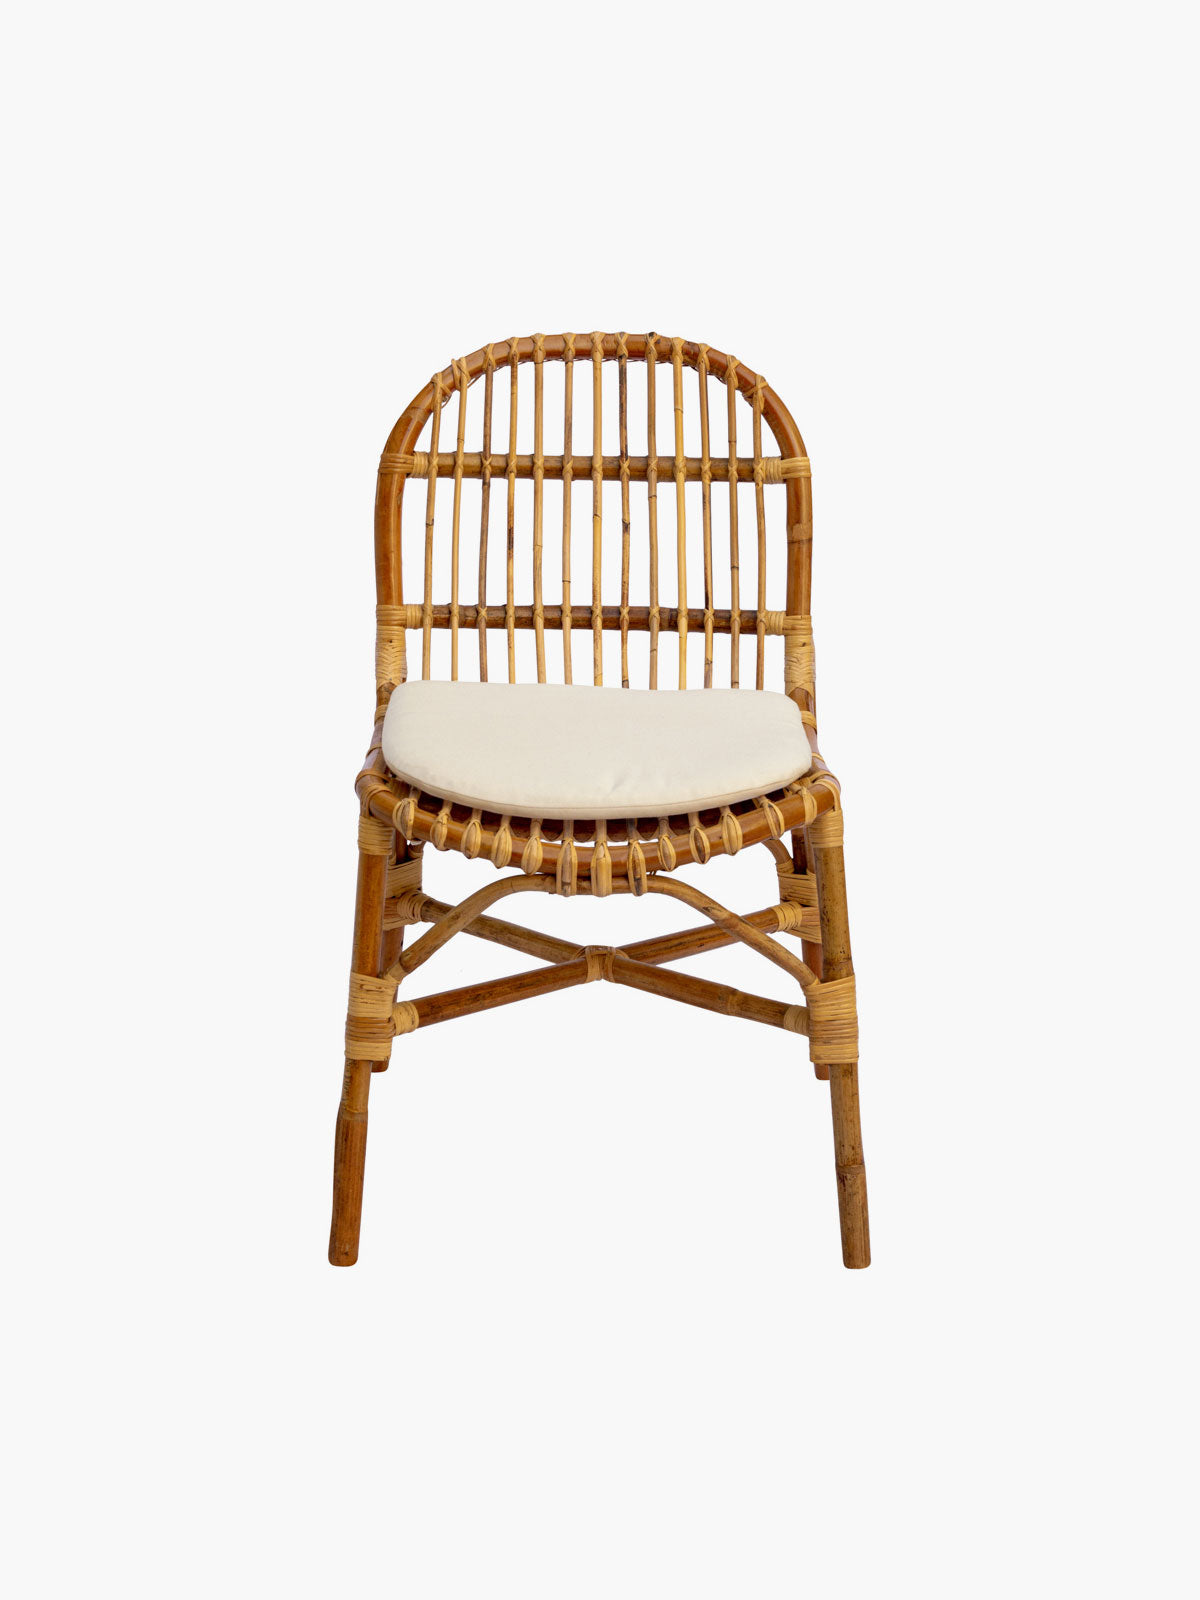 Luberon Chair in Rattan